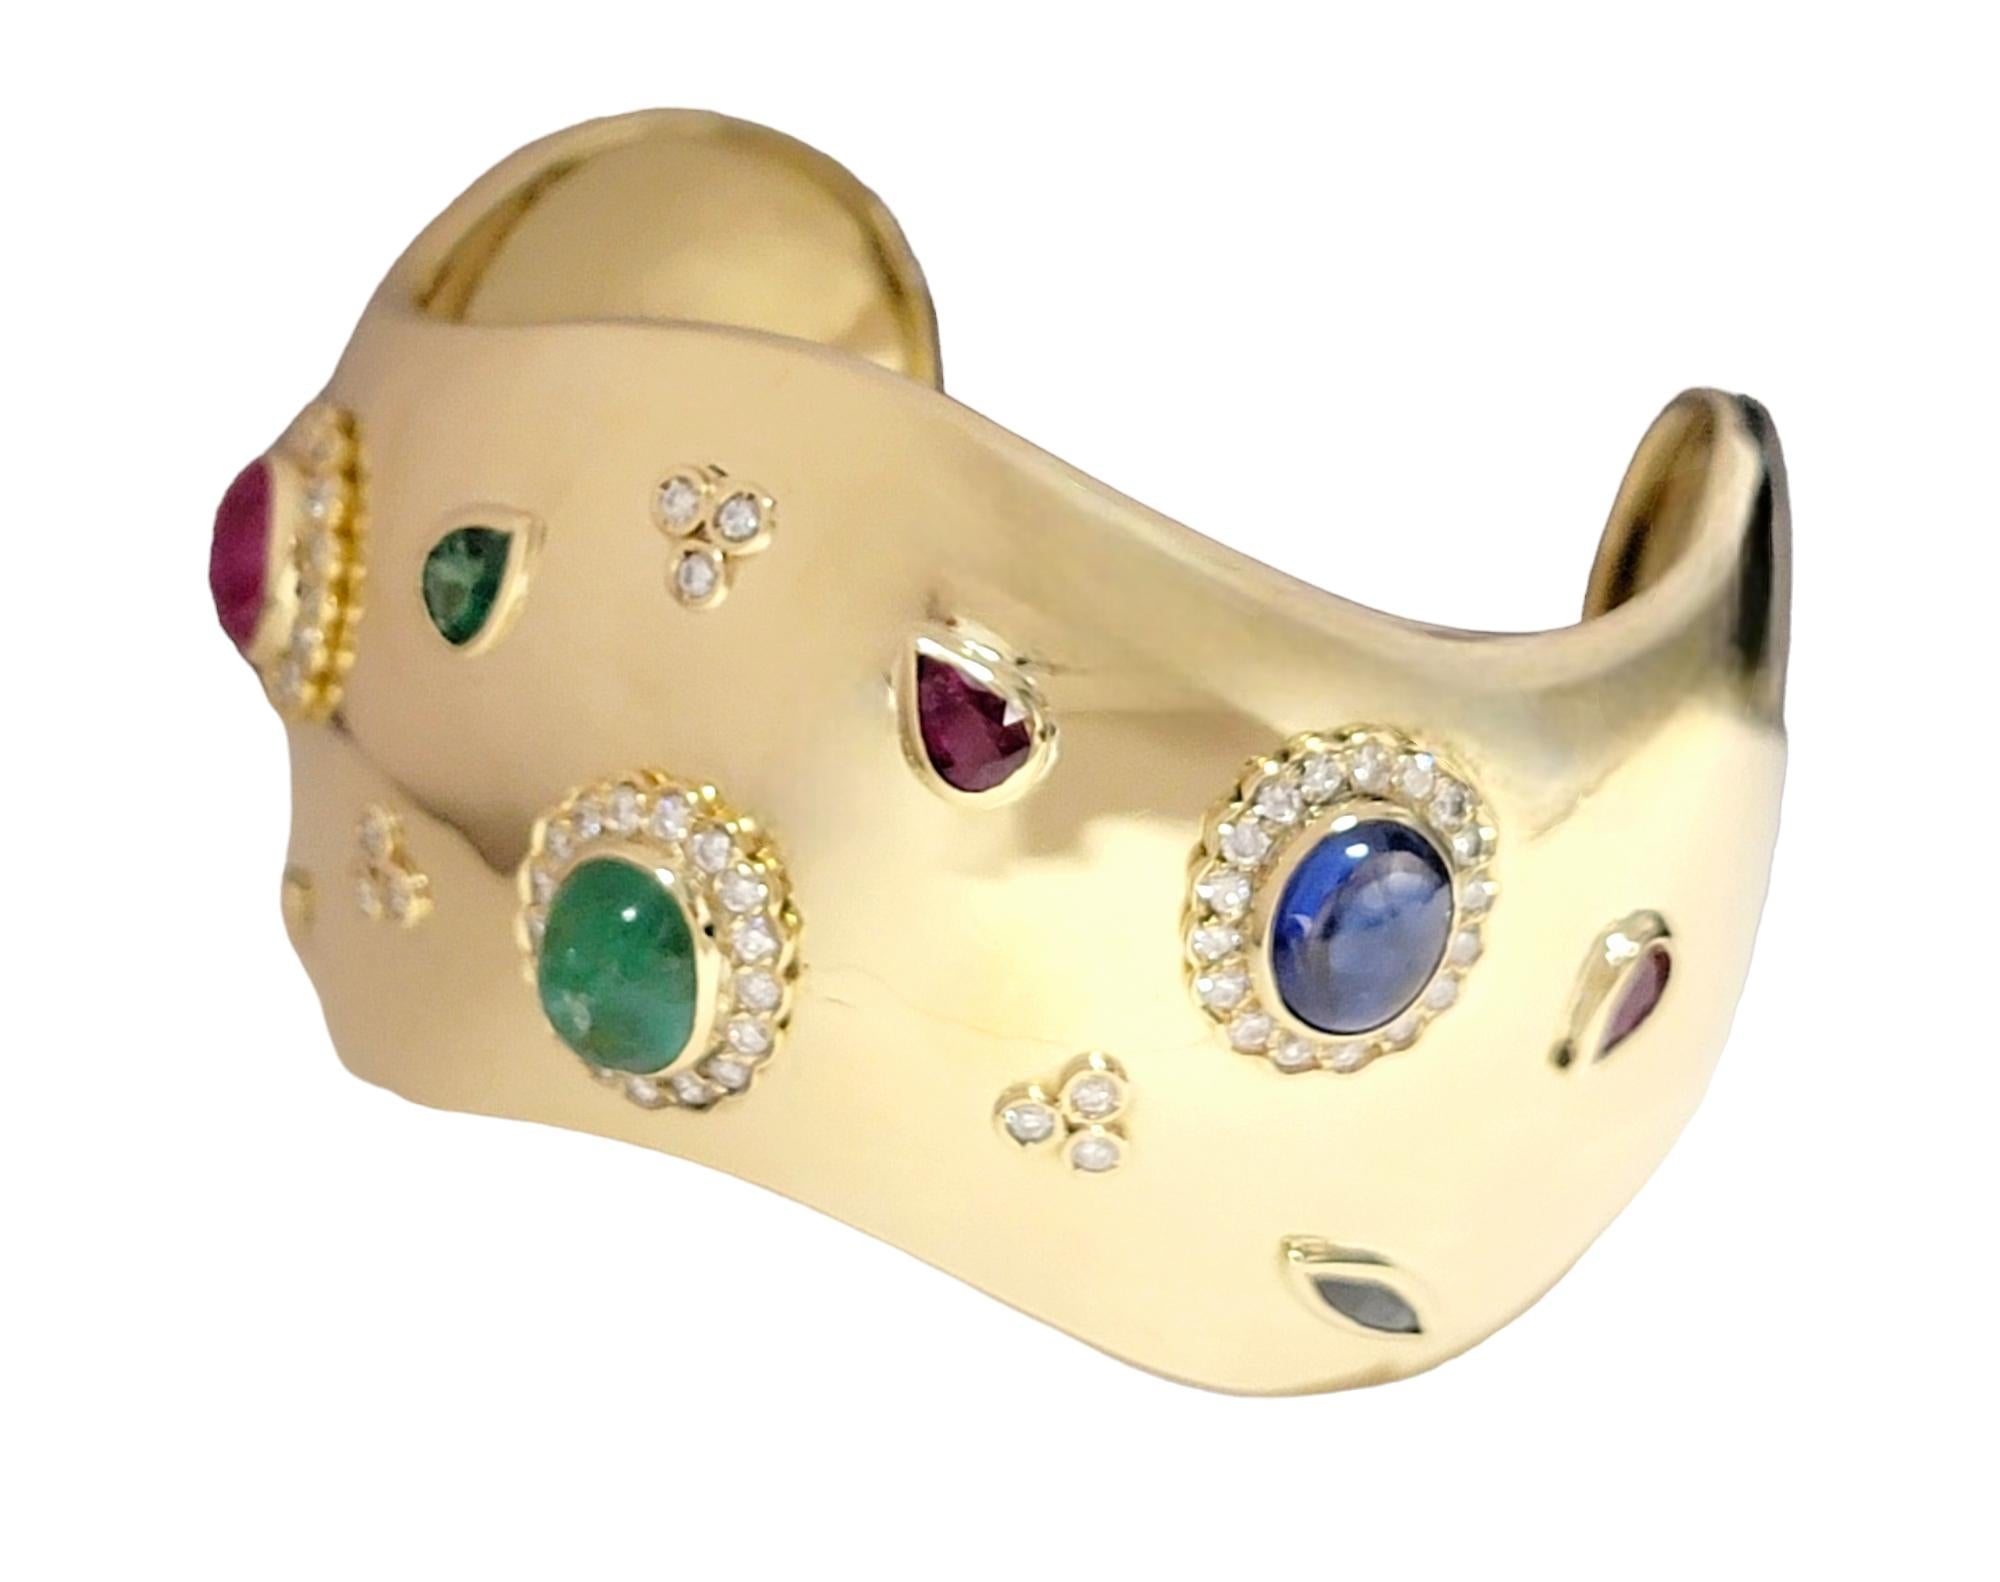 Dieses außergewöhnliche Goldarmband ist der Inbegriff von Eleganz, gefasst in glänzendem 18-karätigem Gelbgold. Das luxuriöse Armband ist mit einer Vielzahl von Edelsteinen verziert - Diamanten, Rubinen, Saphiren und Smaragden -, die alle sorgfältig